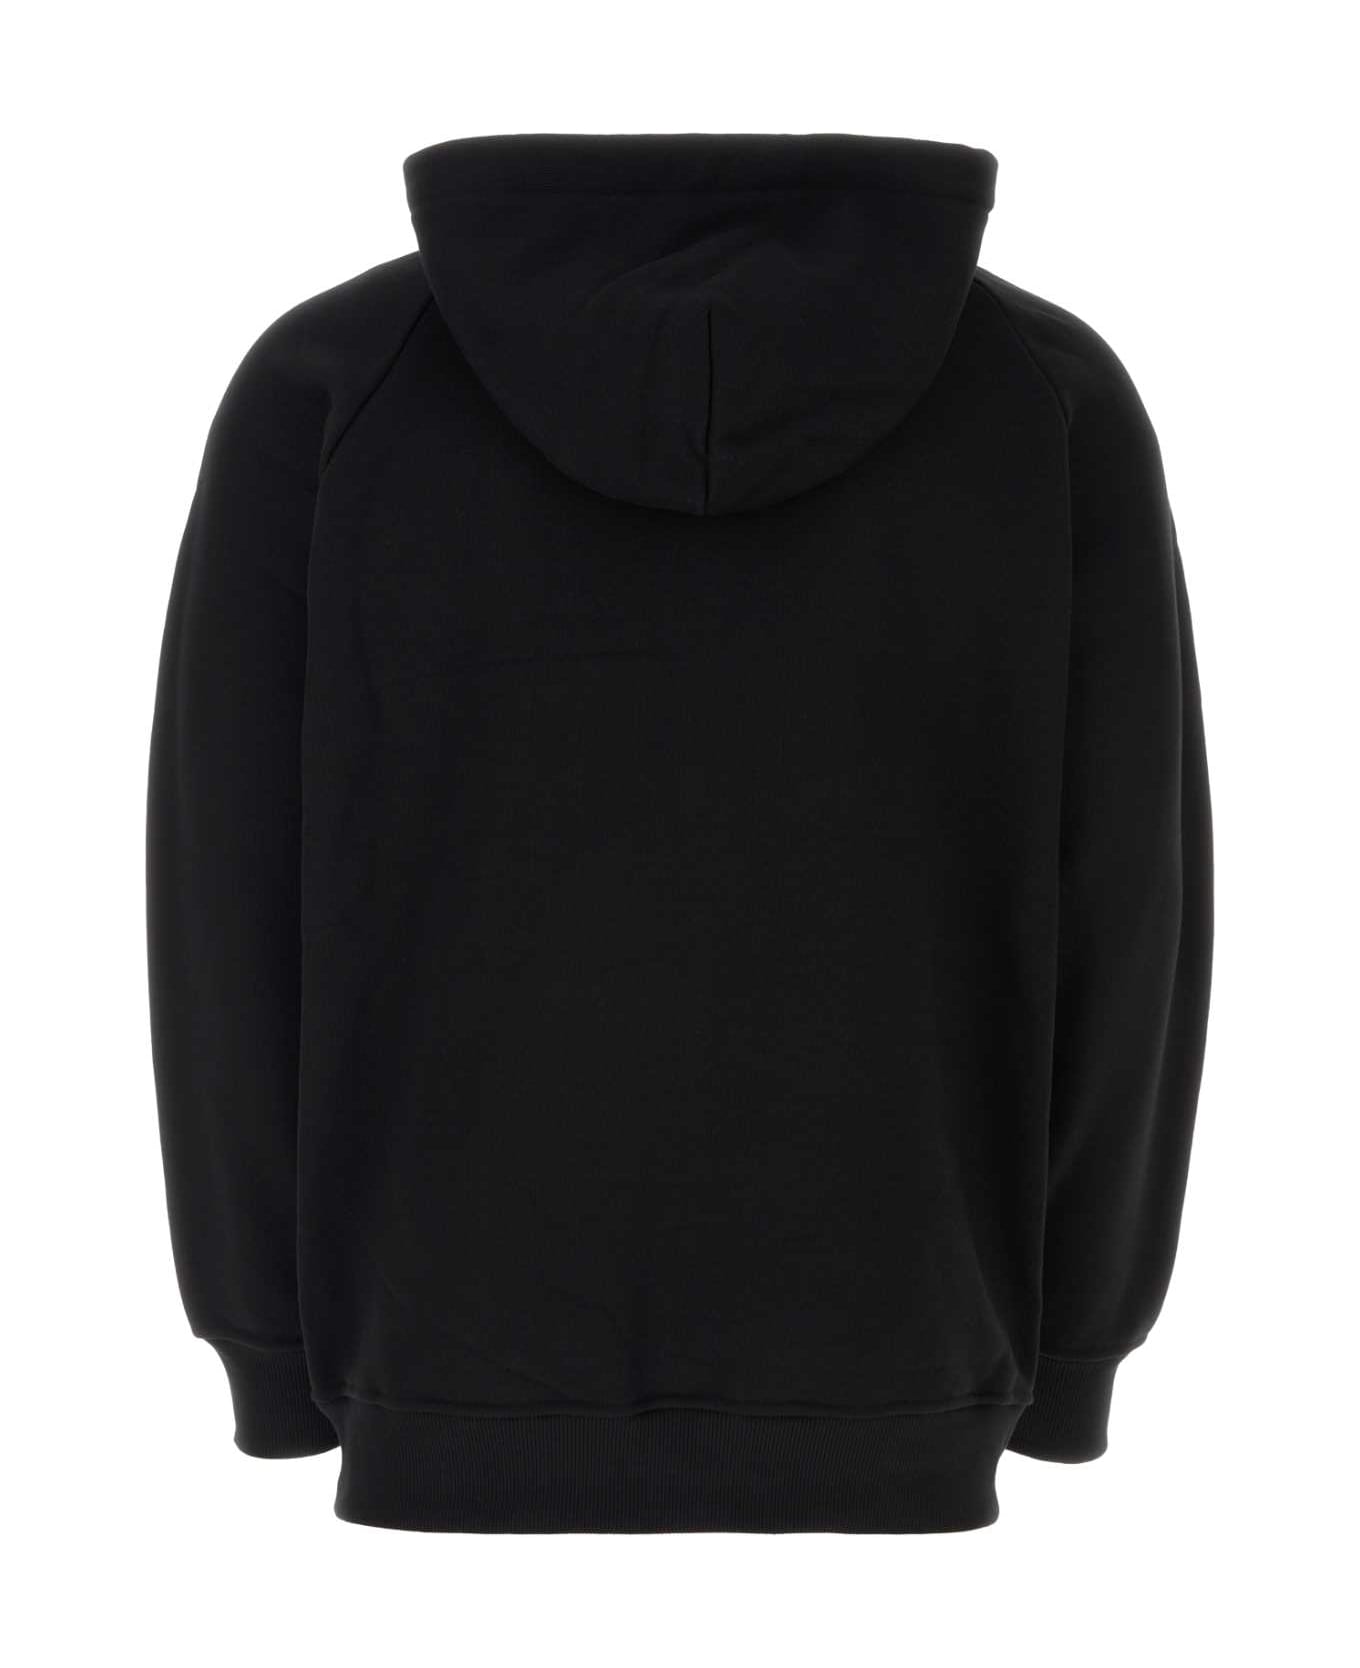 Emporio Armani Black Jersey Sweatshirt - 0999